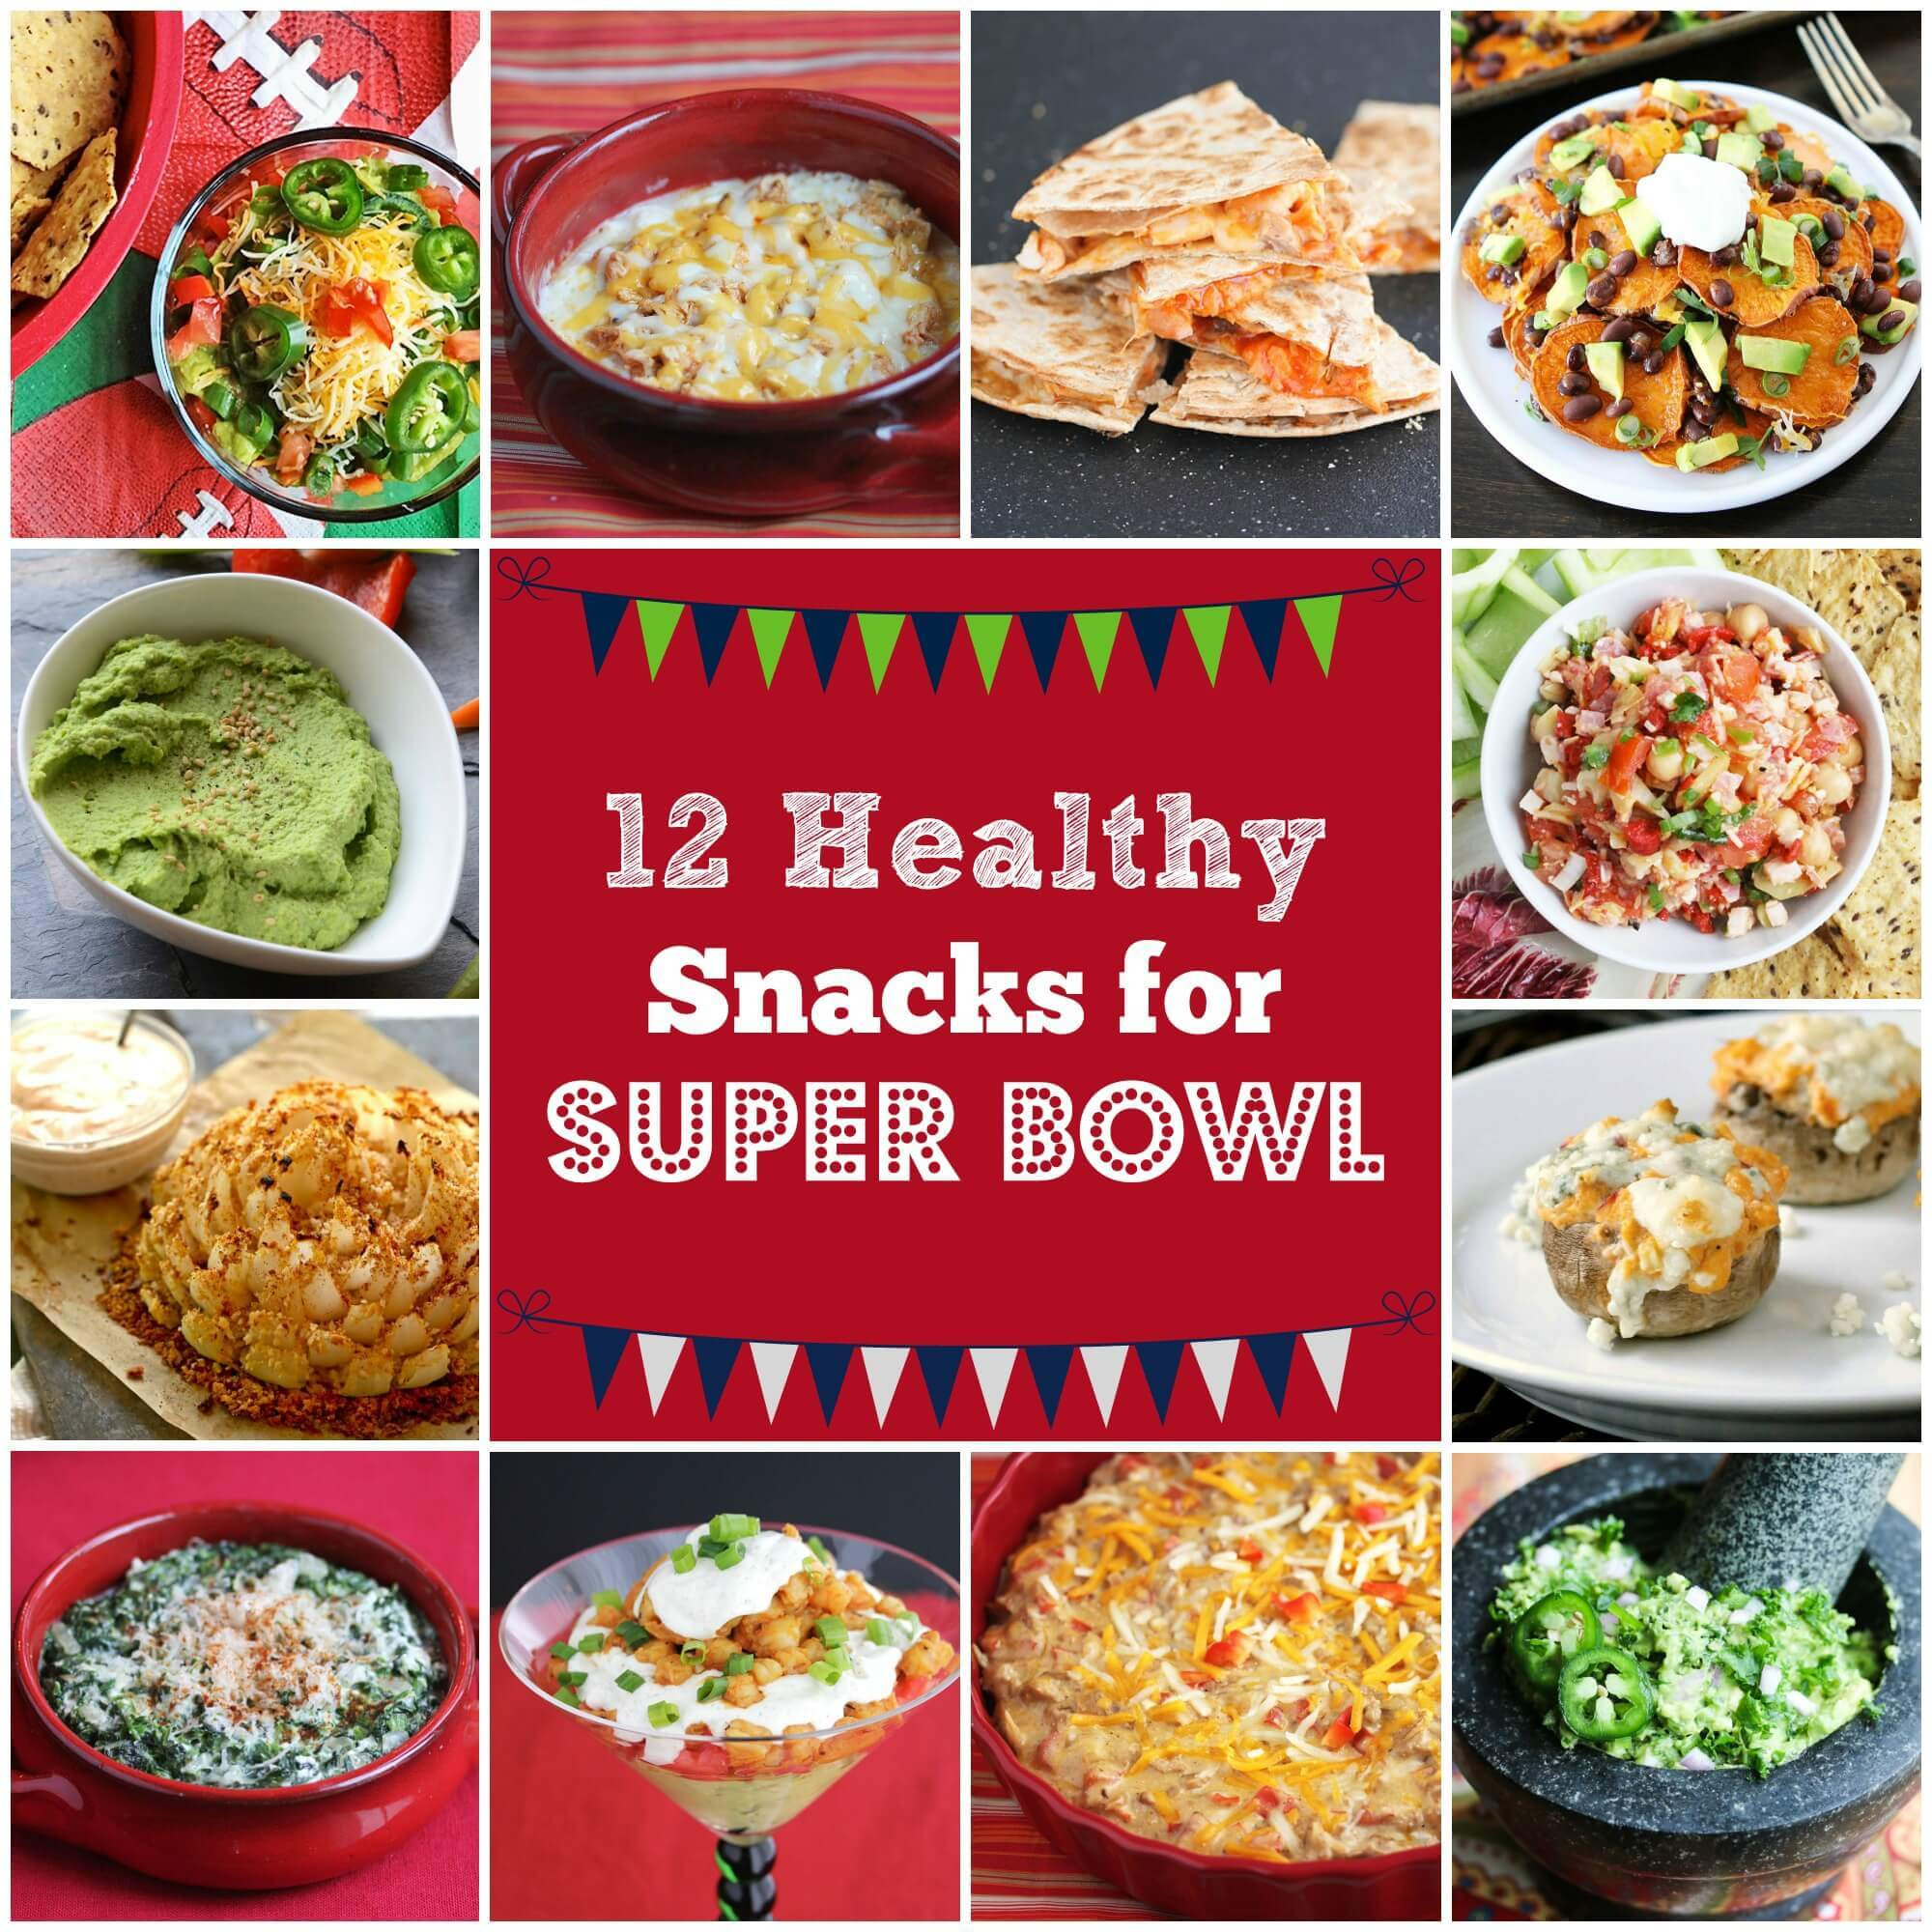 Healthy Super Bowl Recipes
 healthy superbowl food recipes